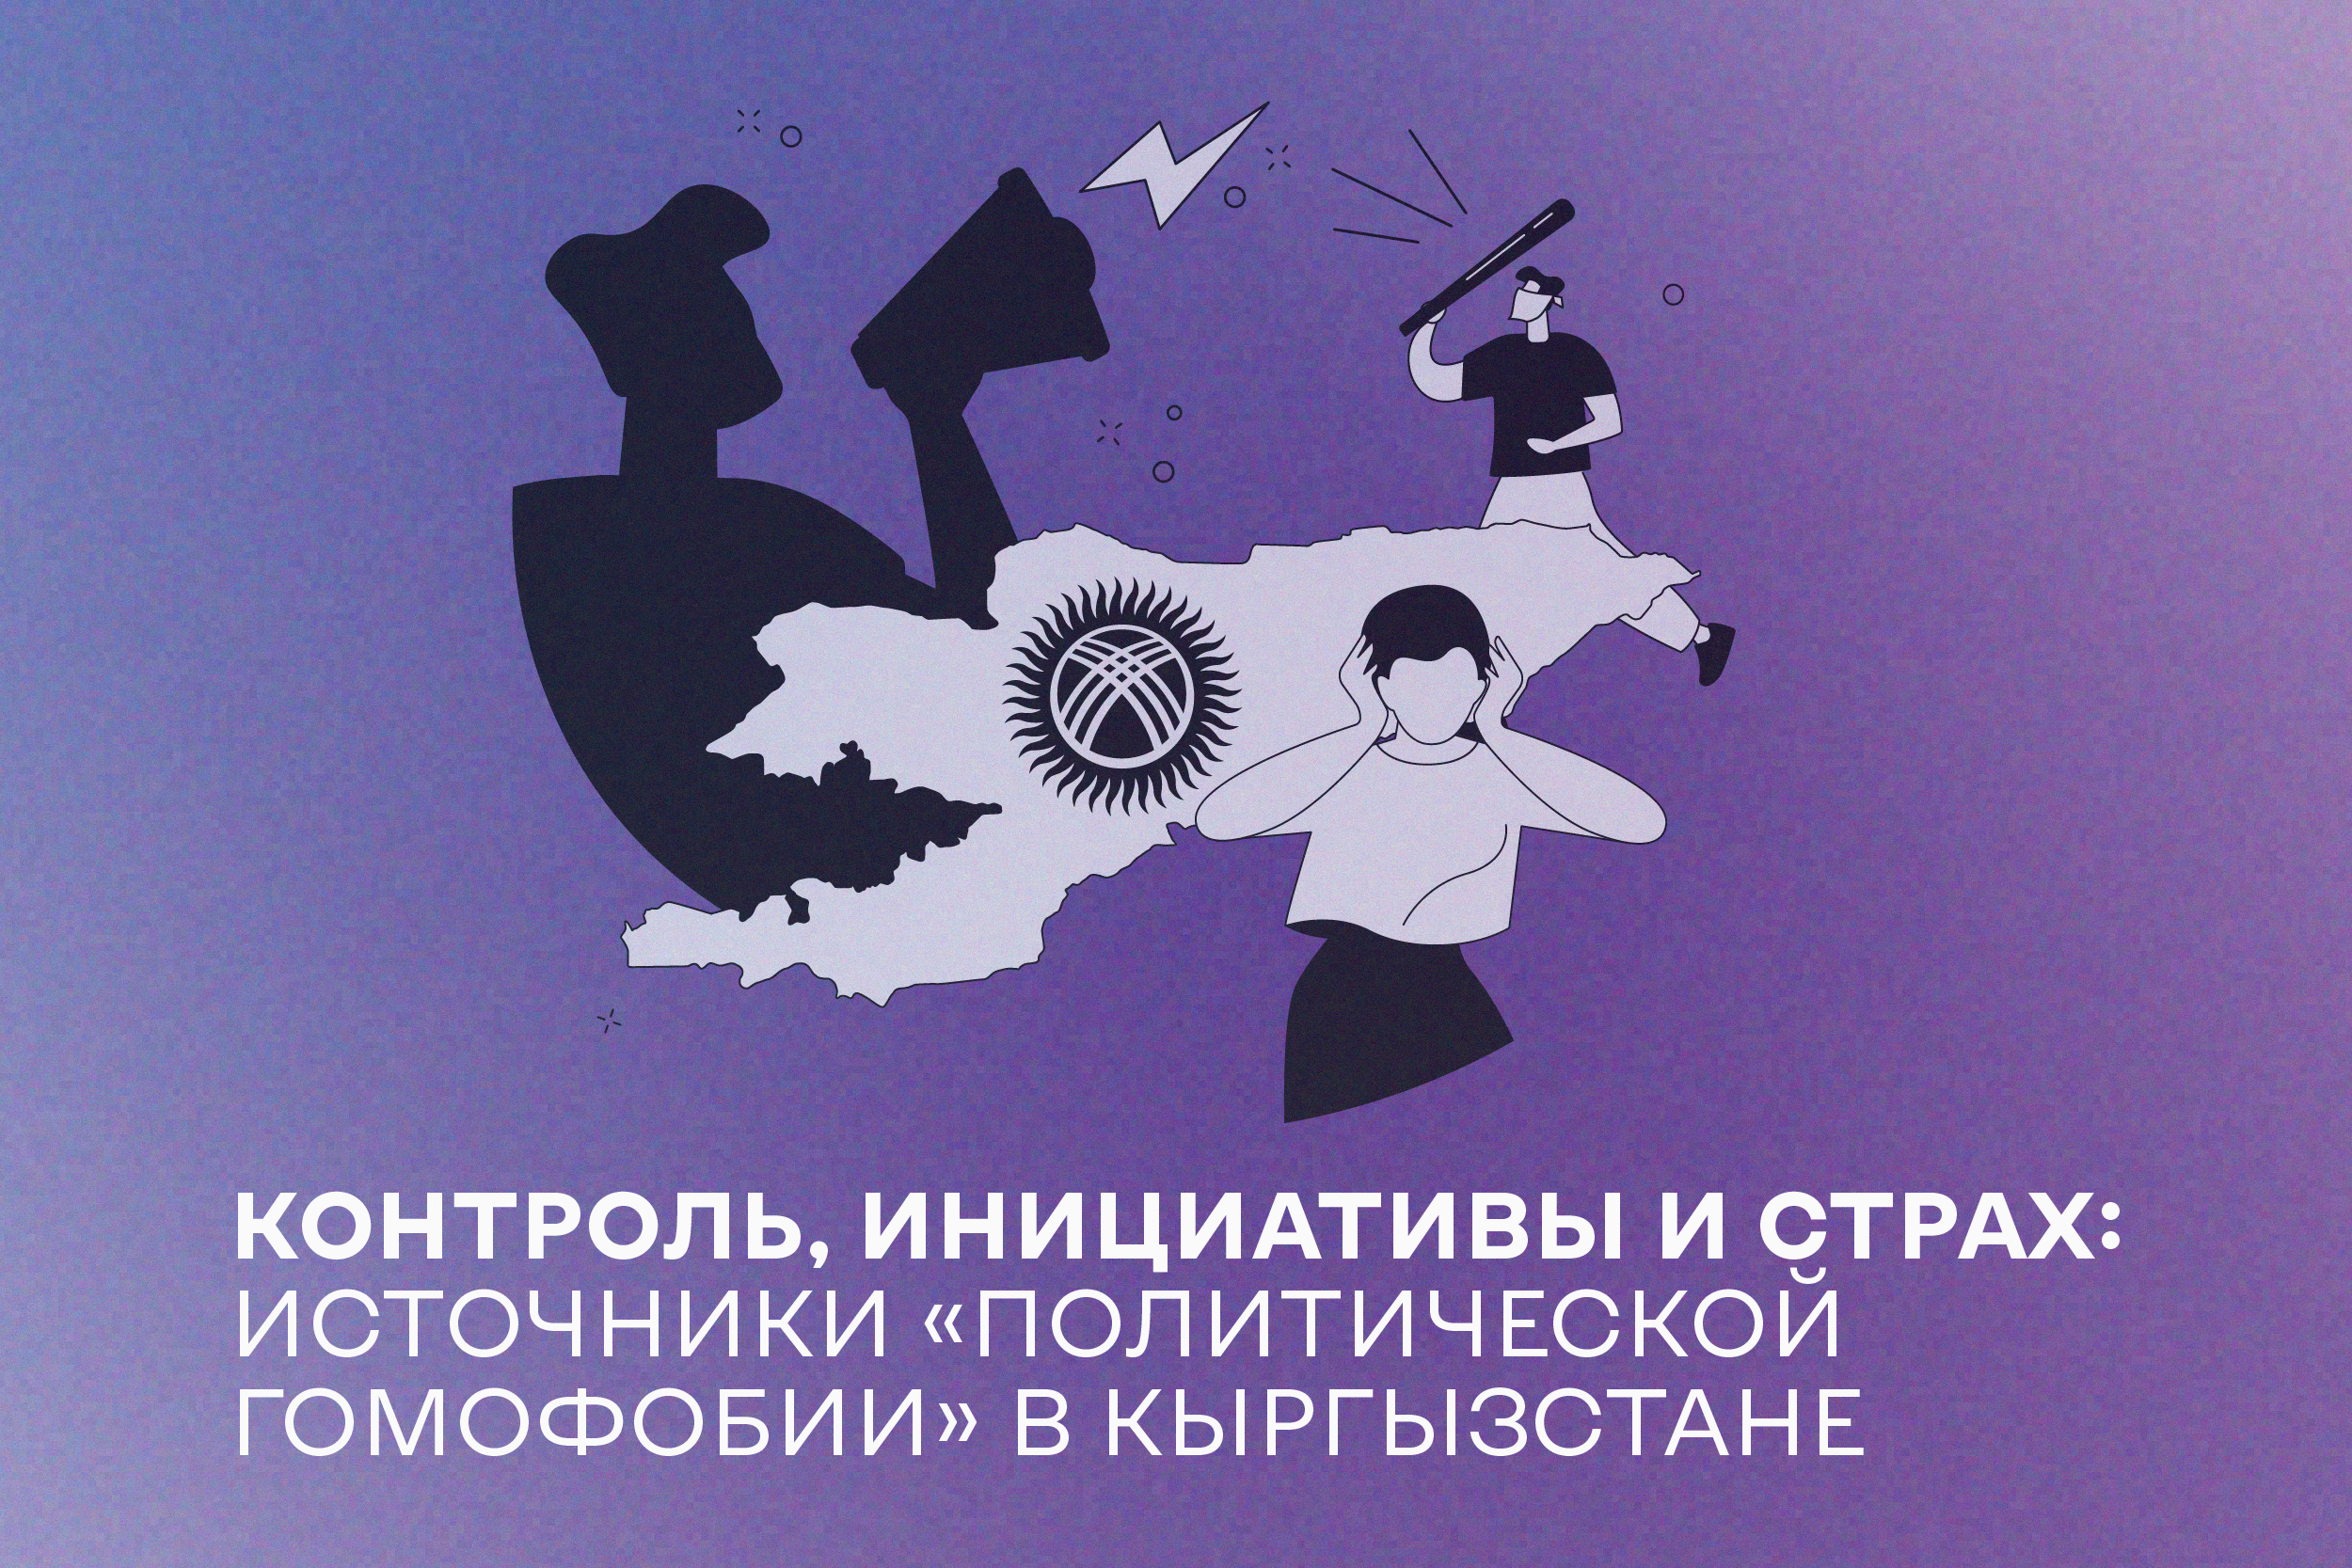 Контроль, инициативы и страх: источники «политической гомофобии» в Кыргызстане